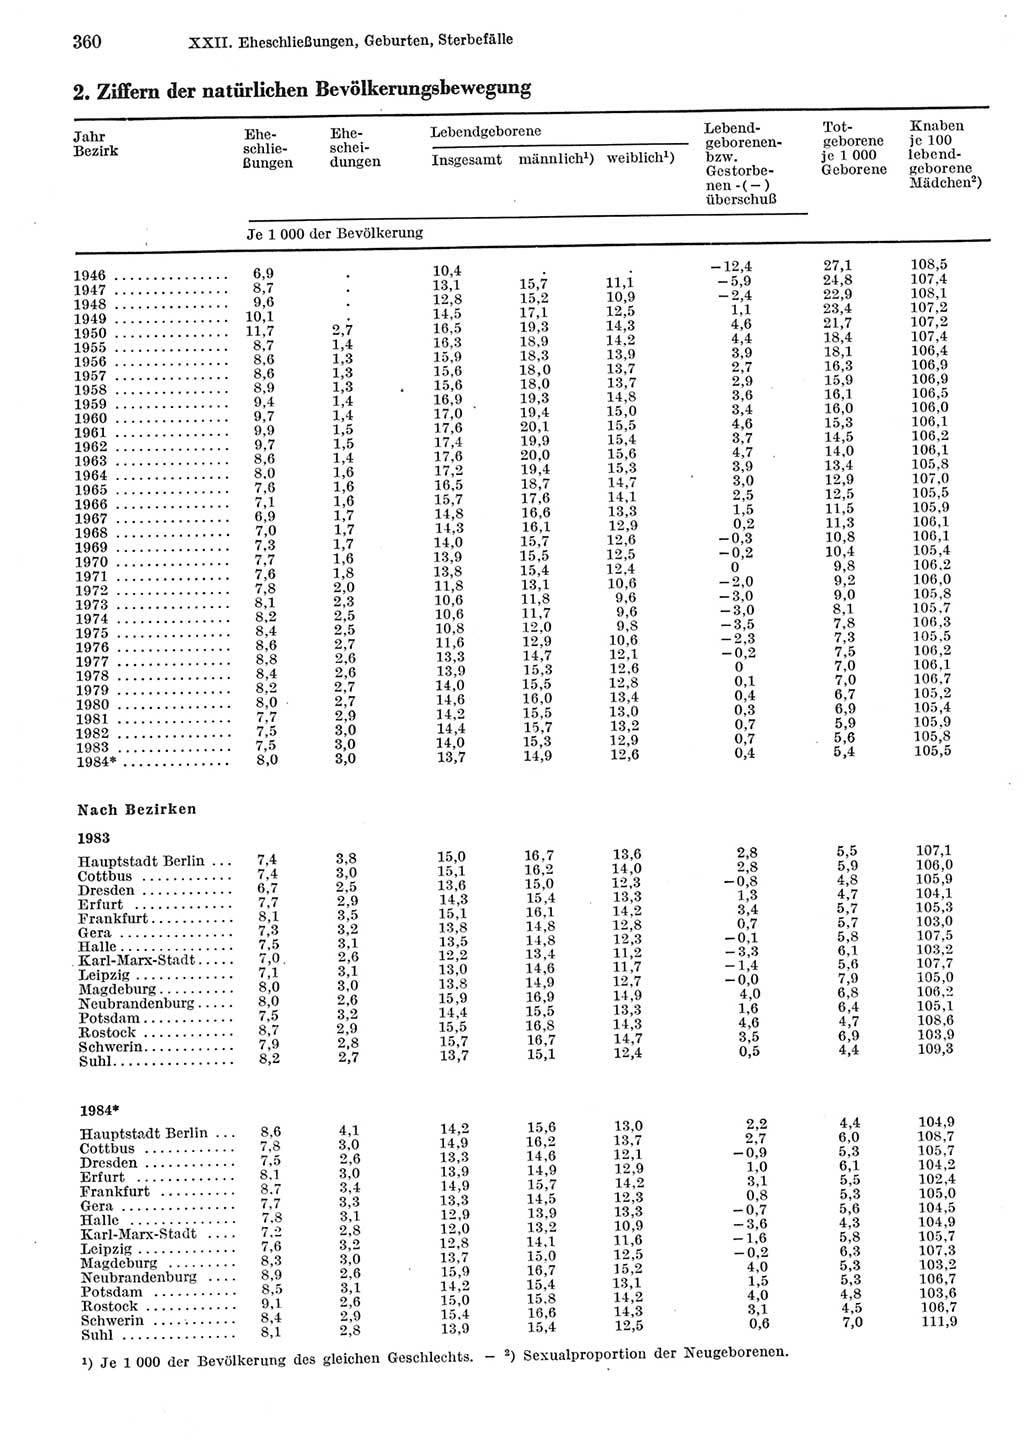 Statistisches Jahrbuch der Deutschen Demokratischen Republik (DDR) 1985, Seite 360 (Stat. Jb. DDR 1985, S. 360)